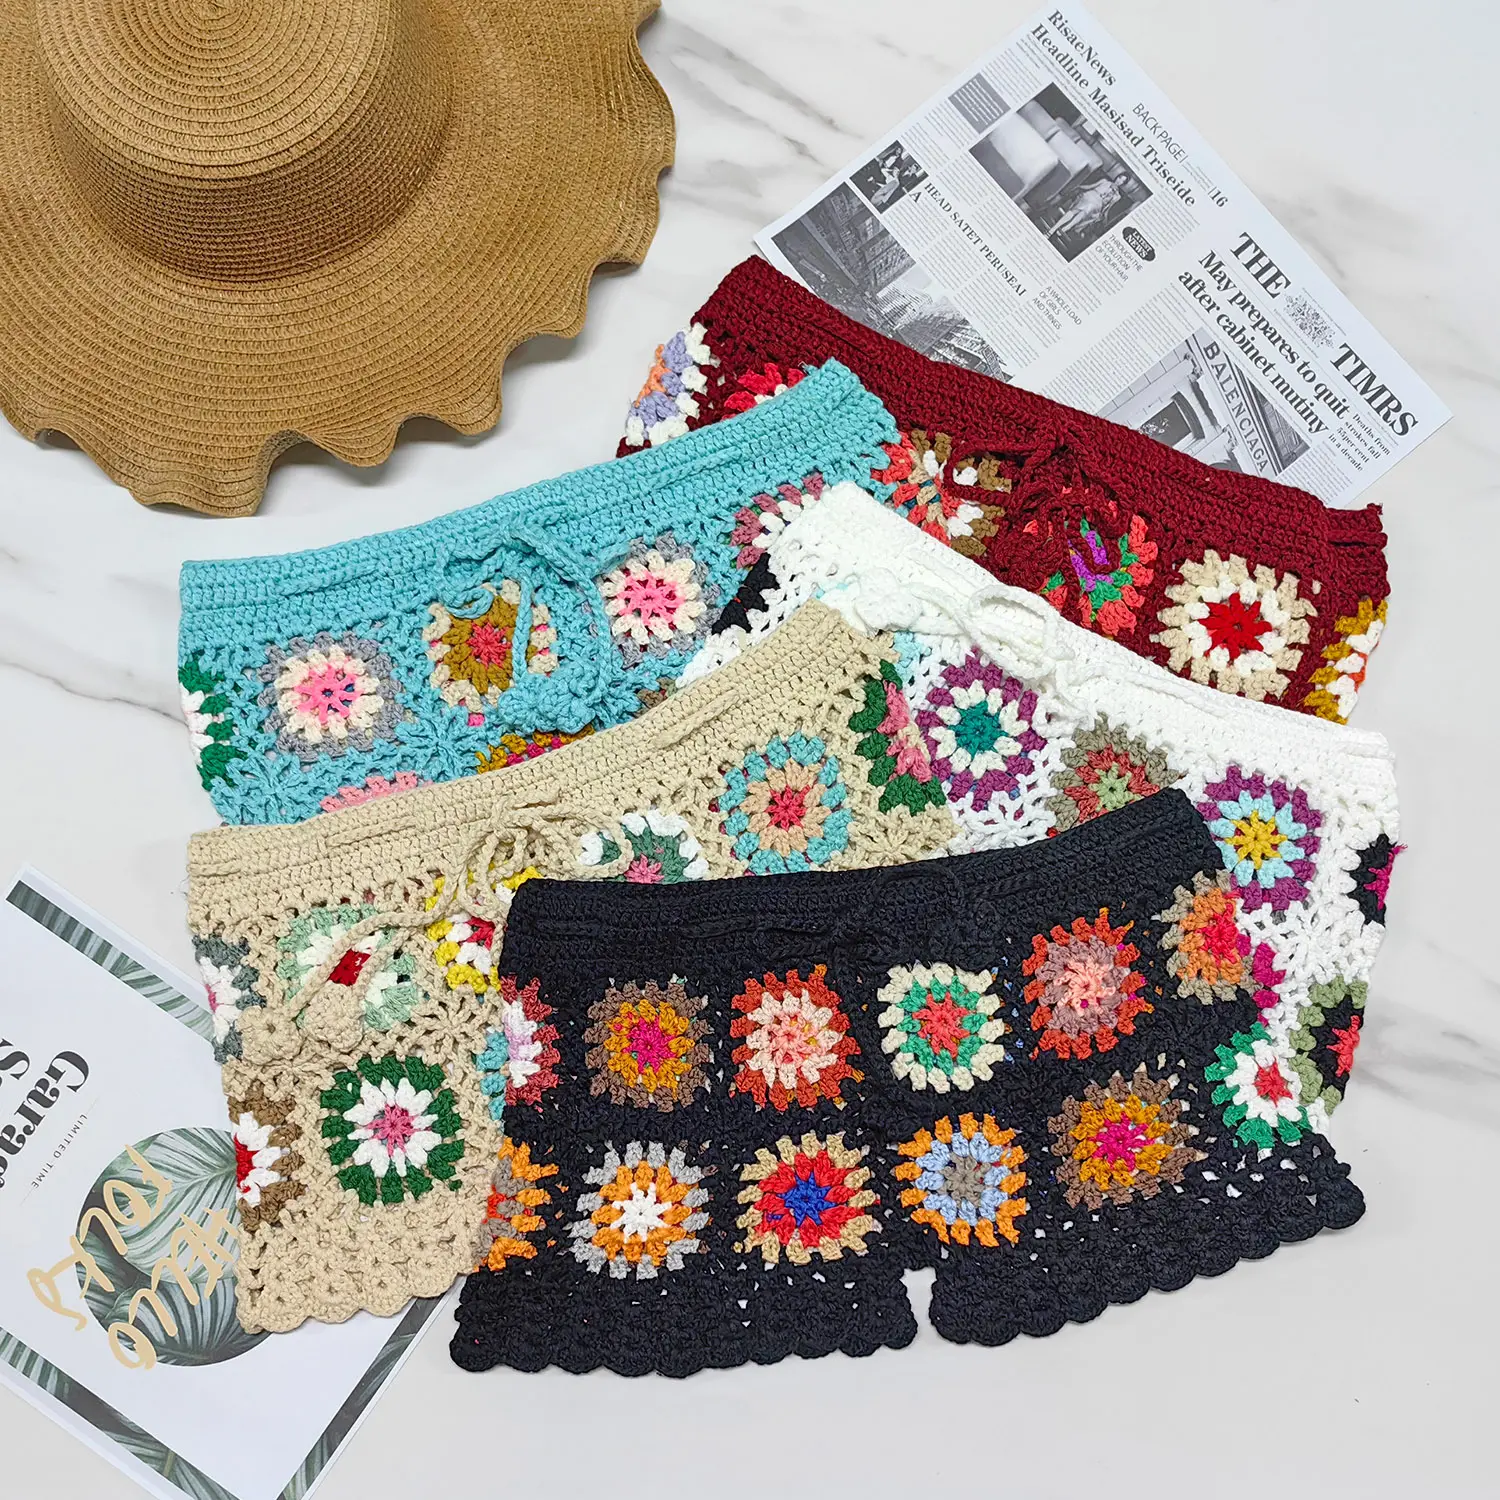 Fábrica Mulheres Granny Square Crochet Praia Shorts Bottoms Cover Up Laço cintura